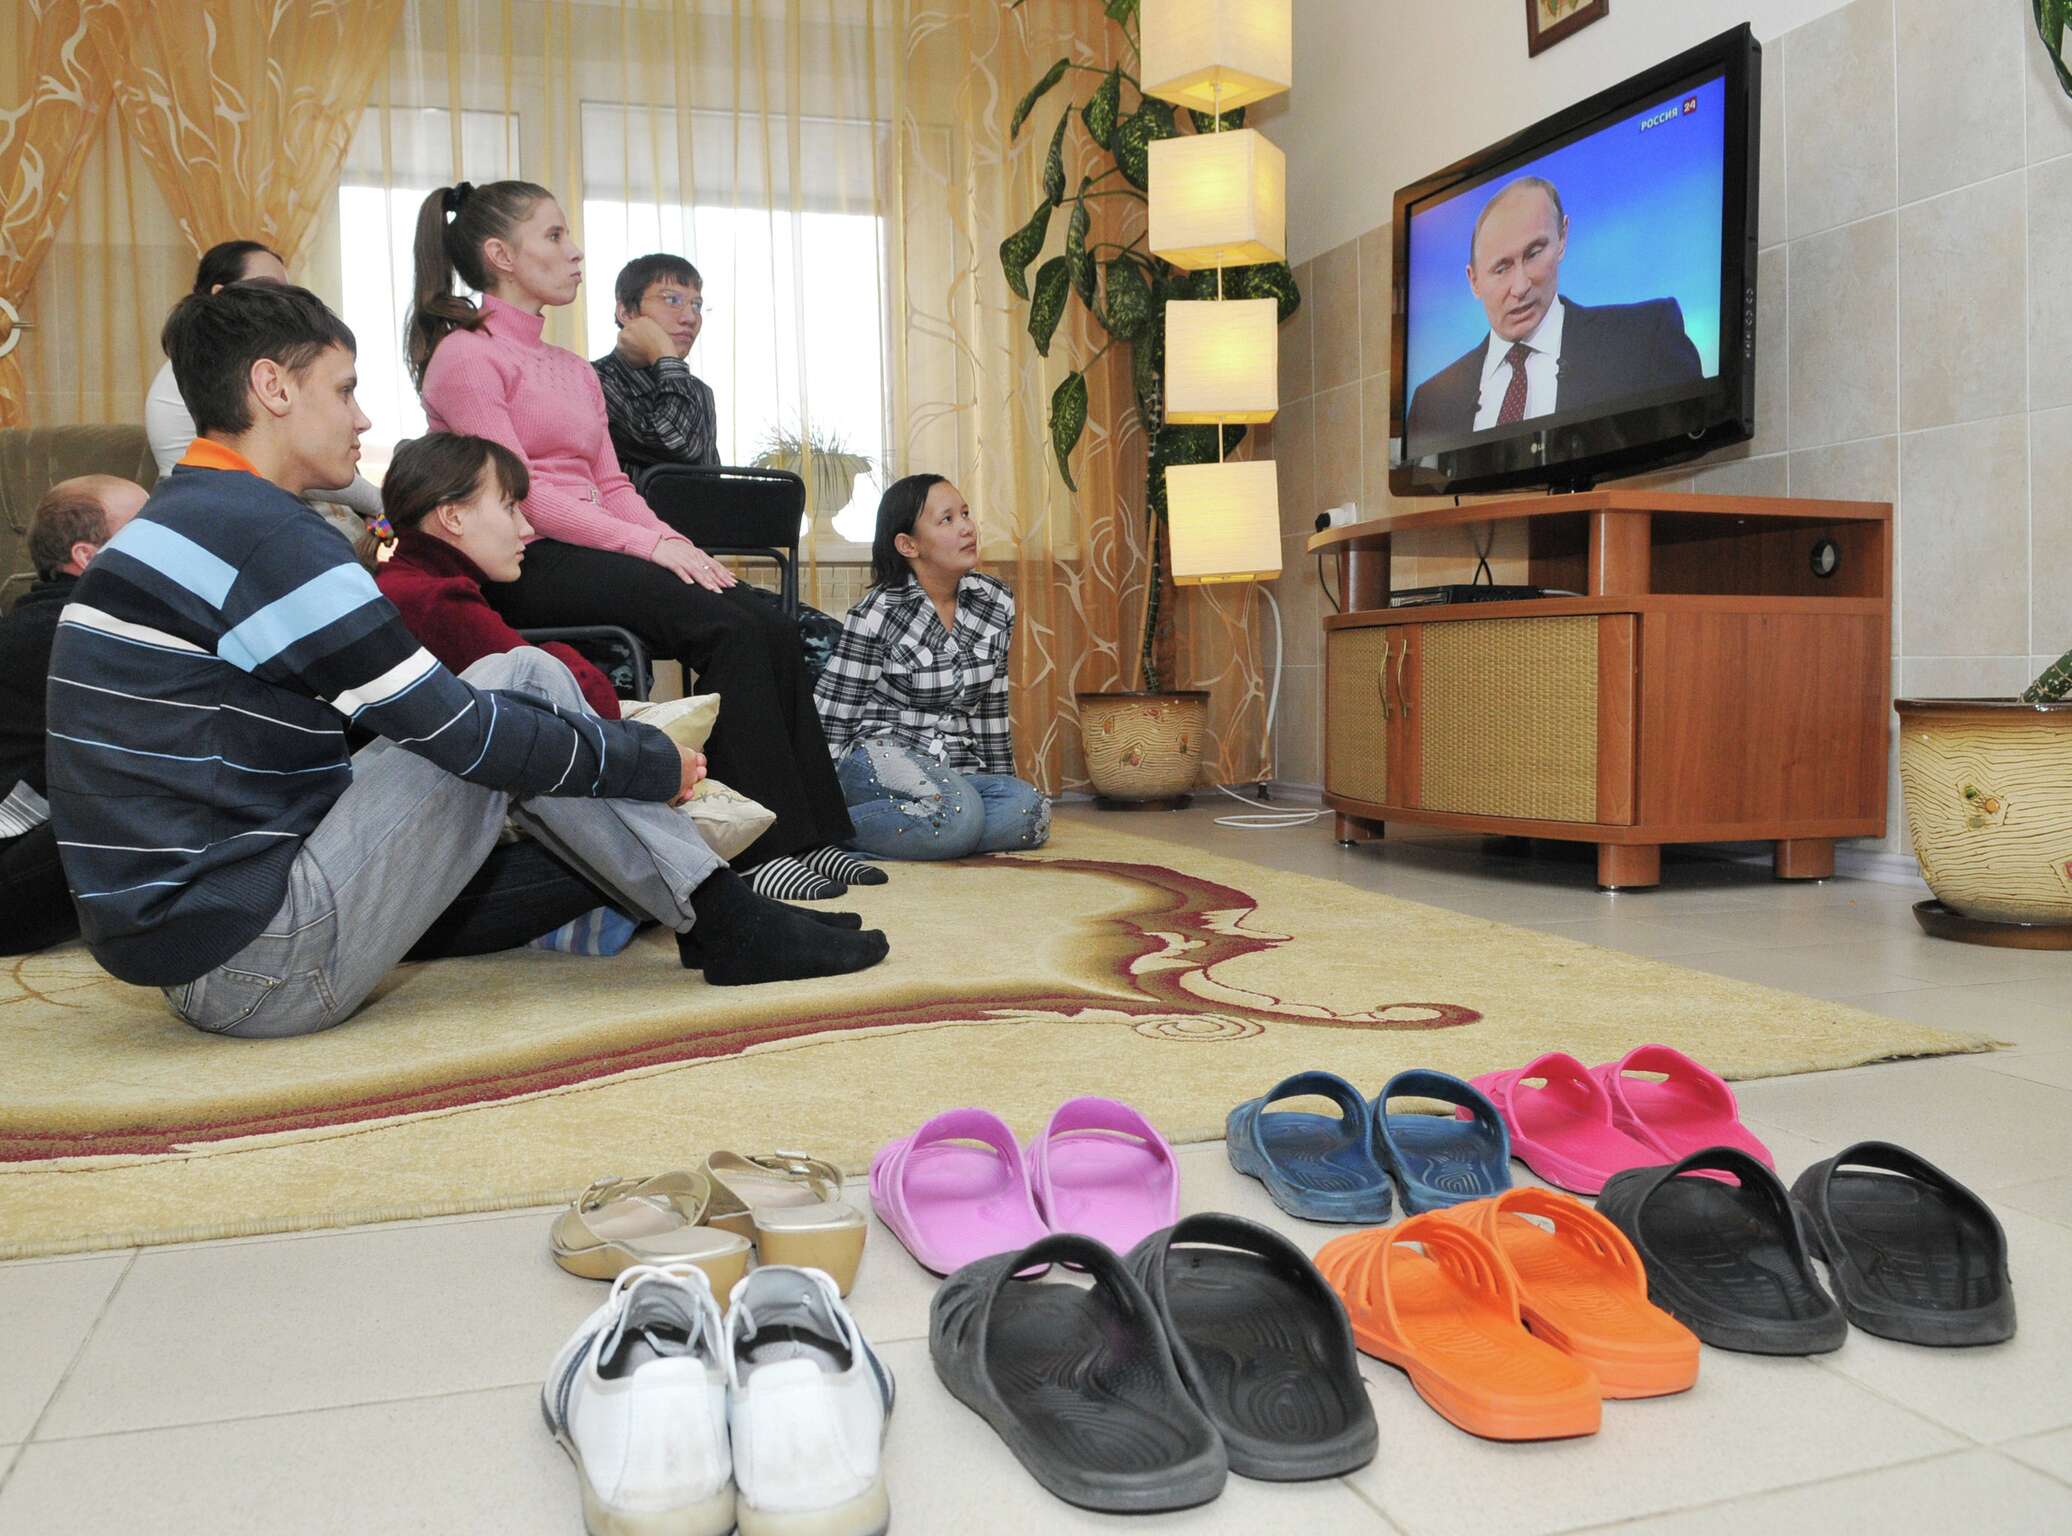 Сегодня по телевизору есть какие. Семья у телевизора. Российская семья у телевизора. Семья смотрит телевизор. Россияне у телевизора.